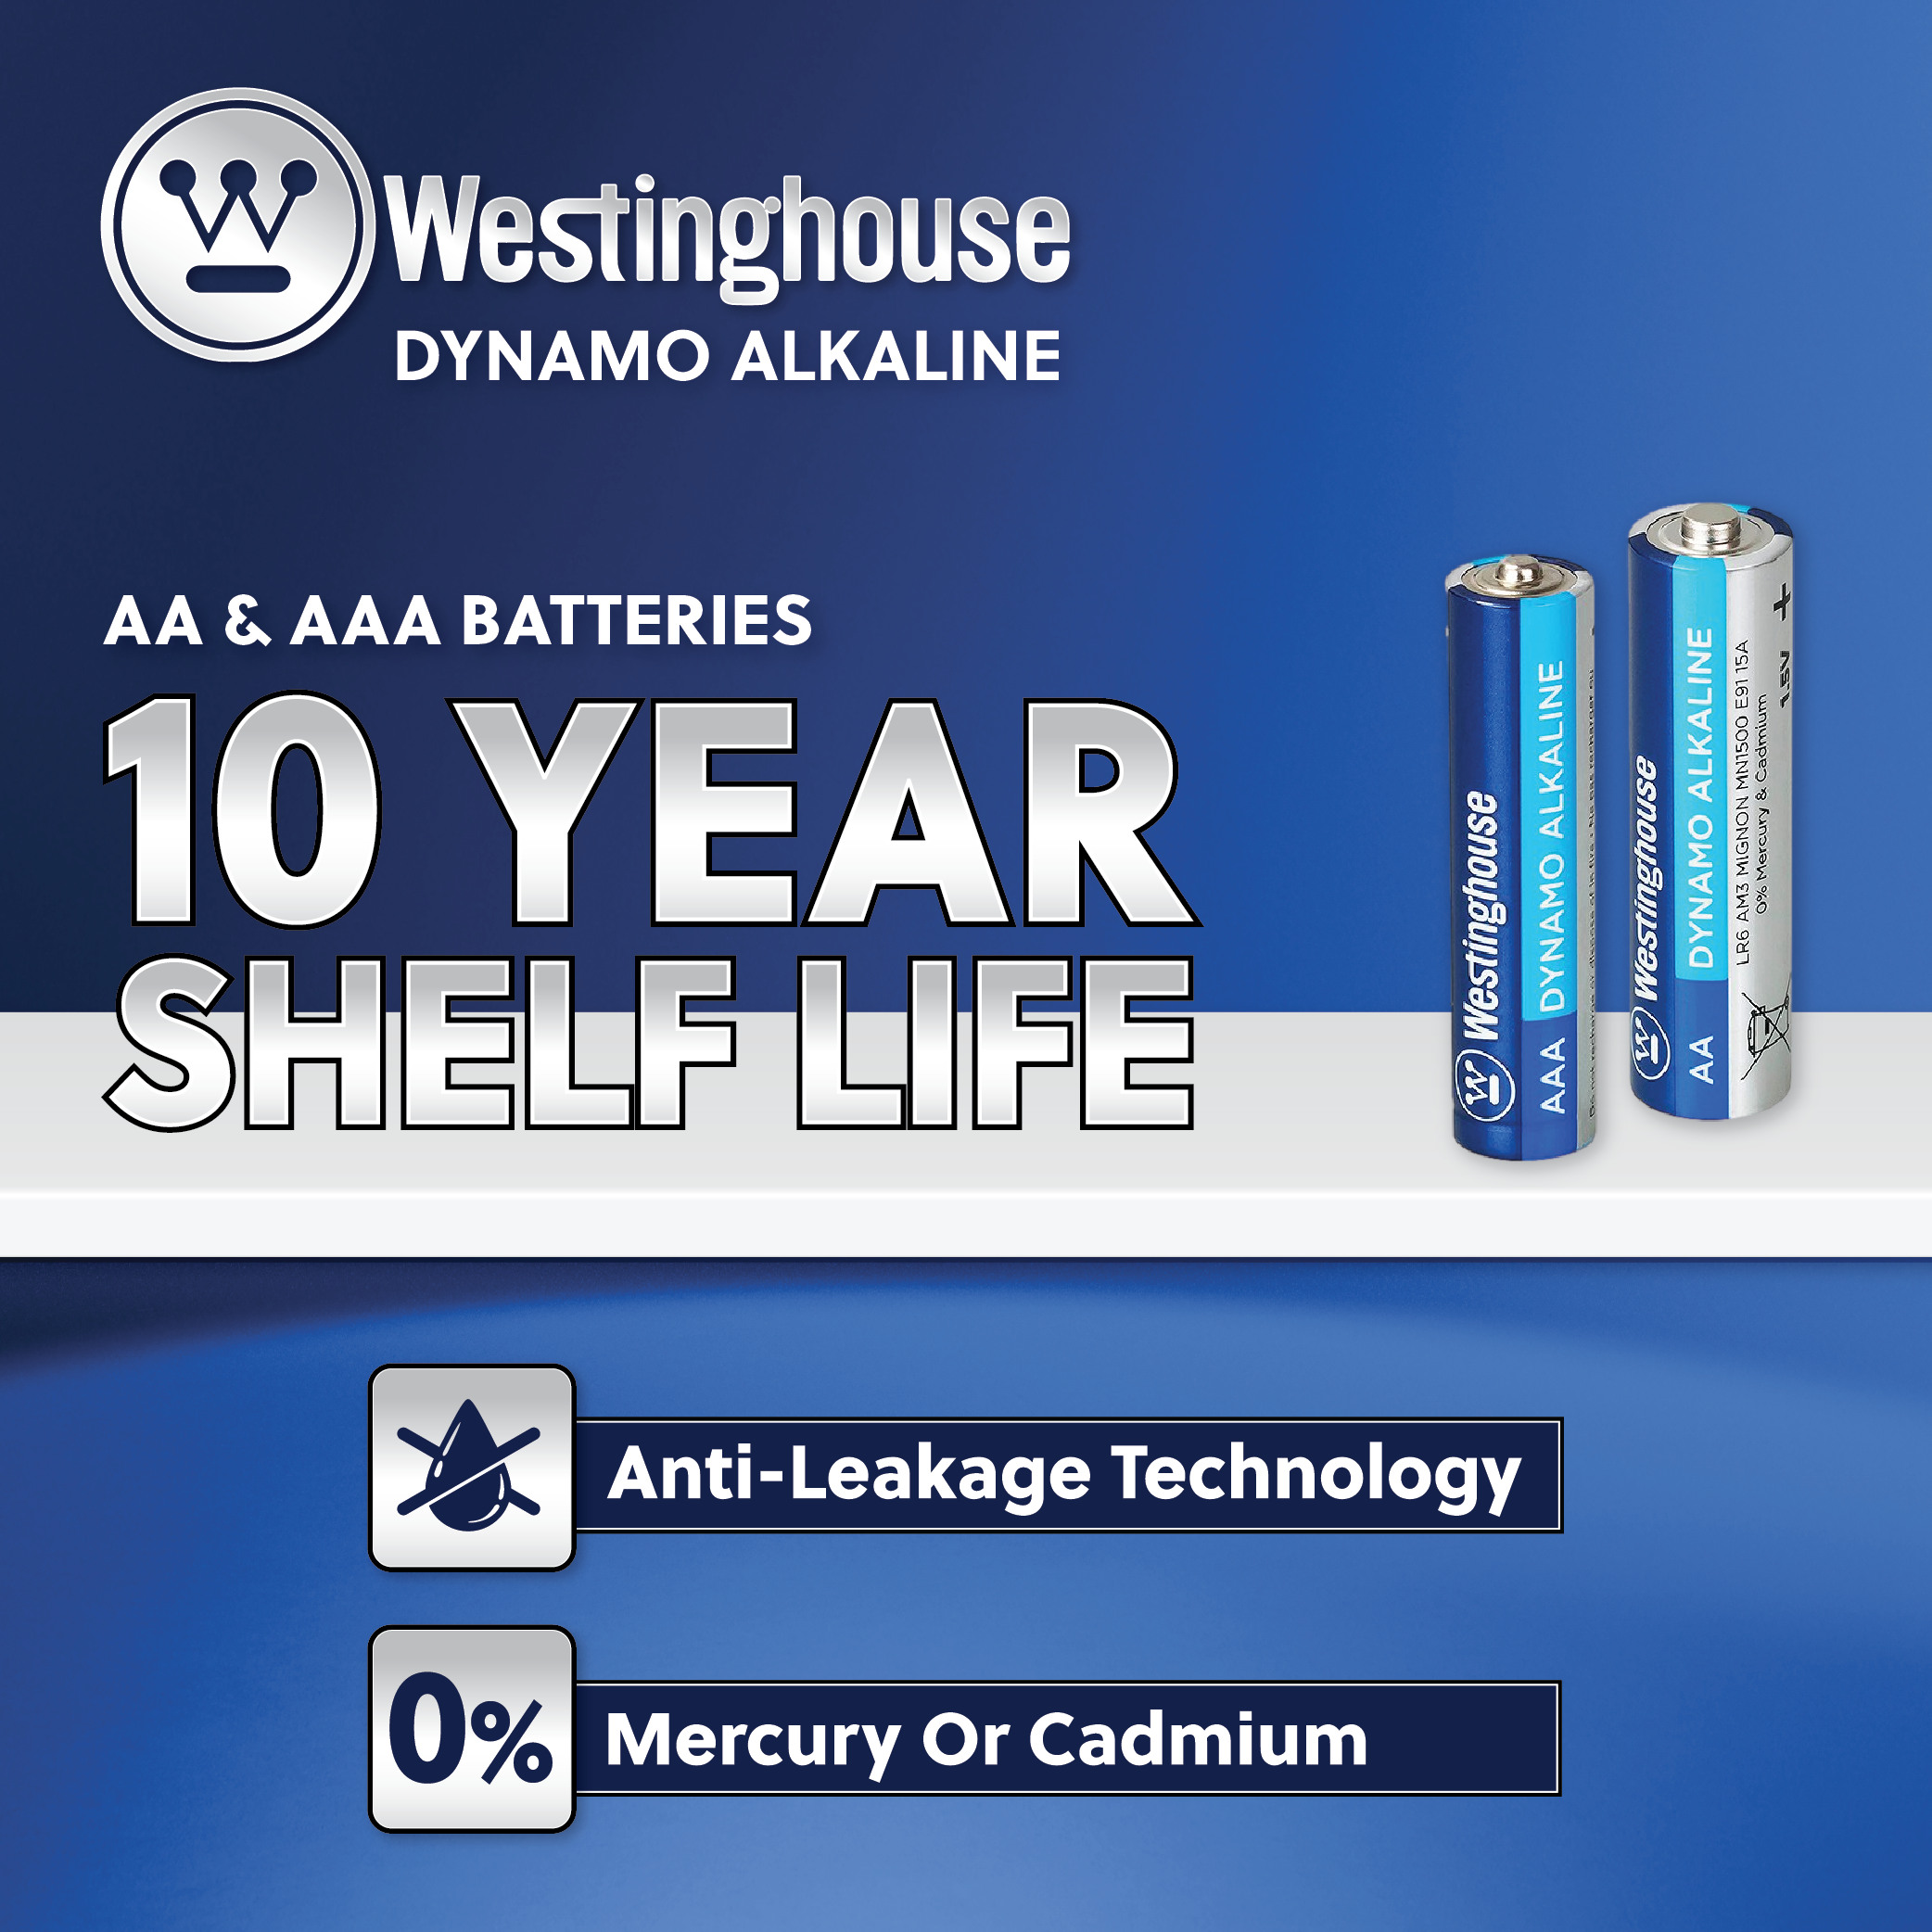 Westinghouse AAA Dynamo Alkaline